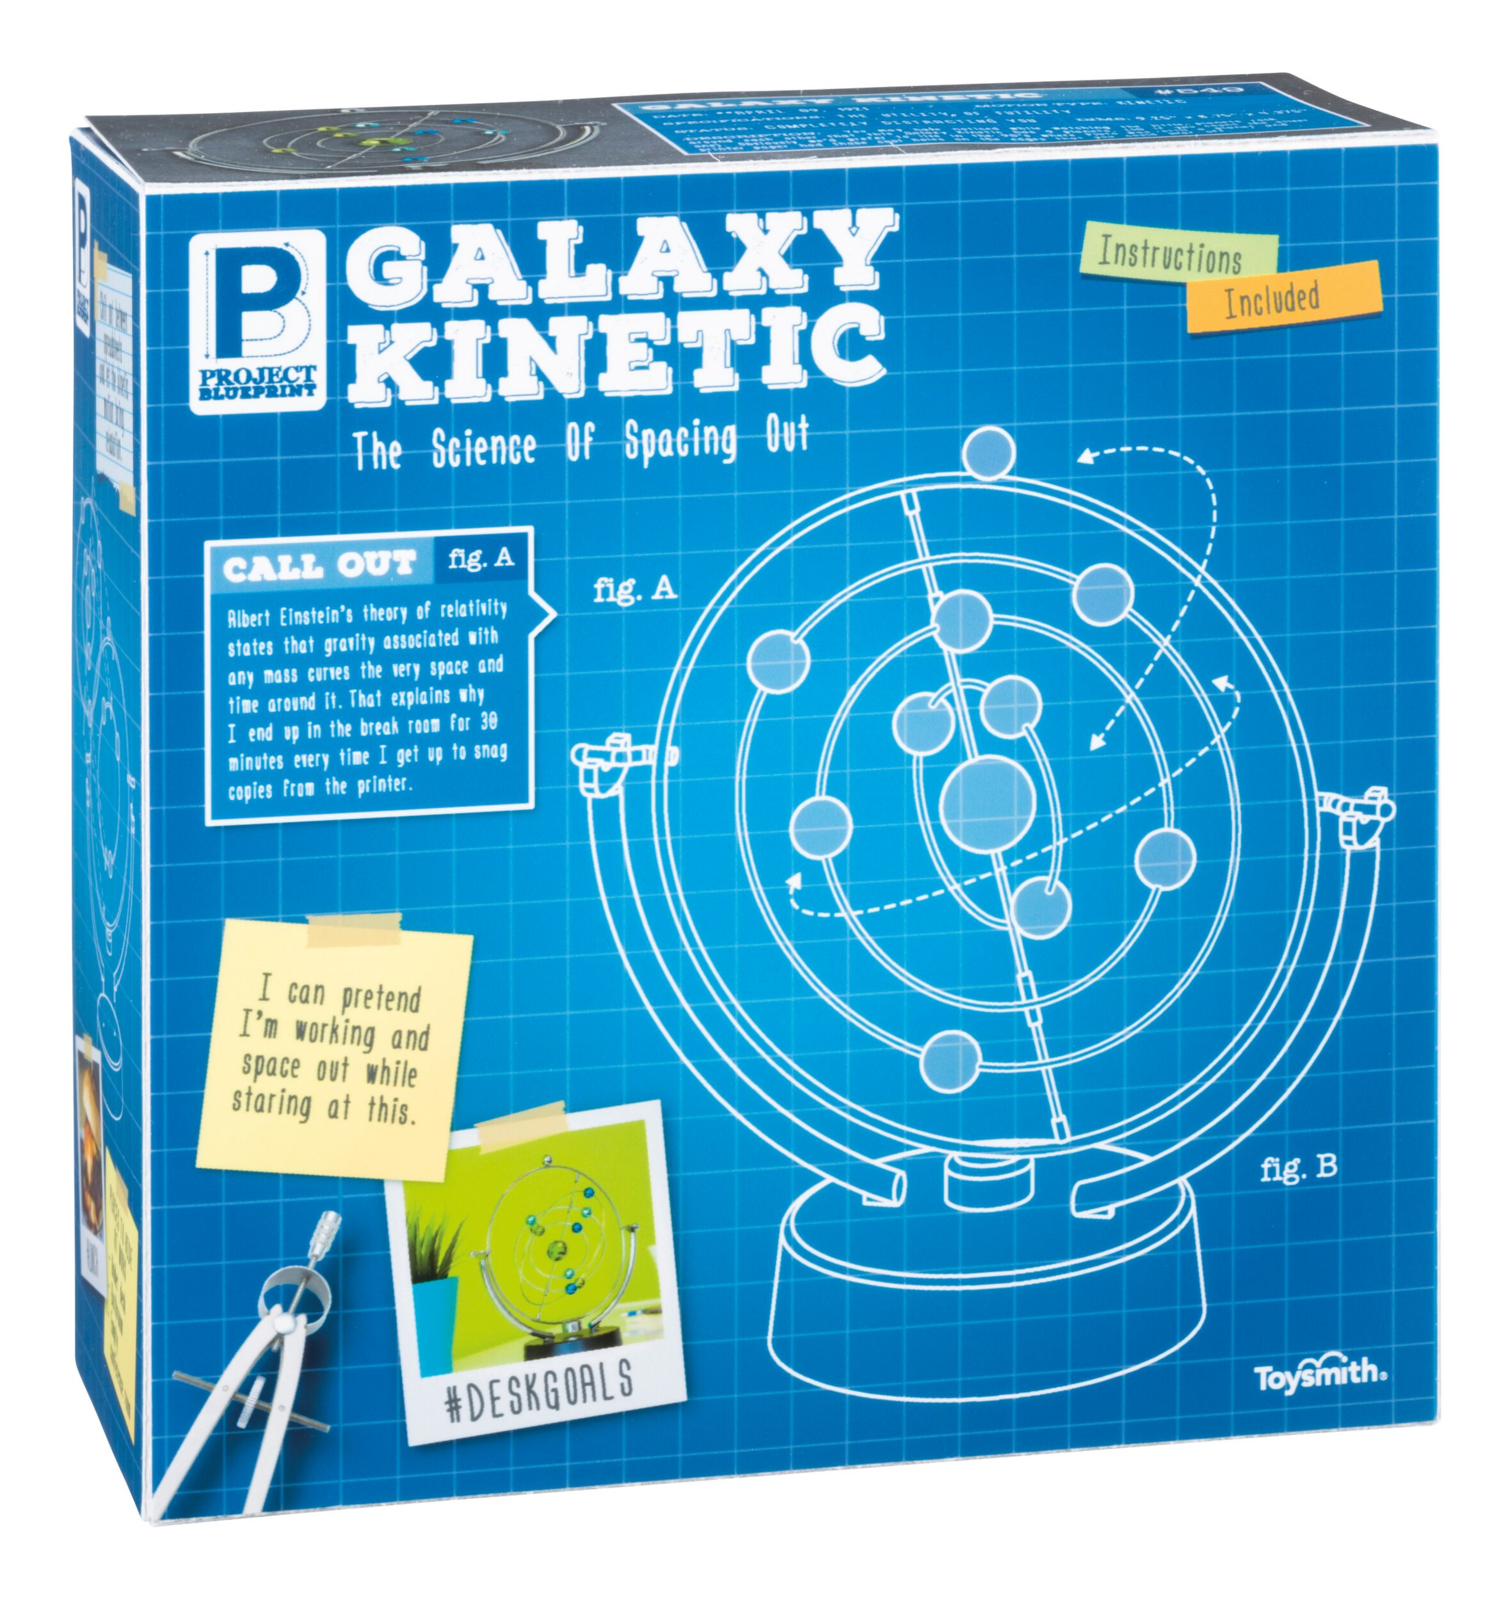 Galaxy Kinetic Desktop Office Toy